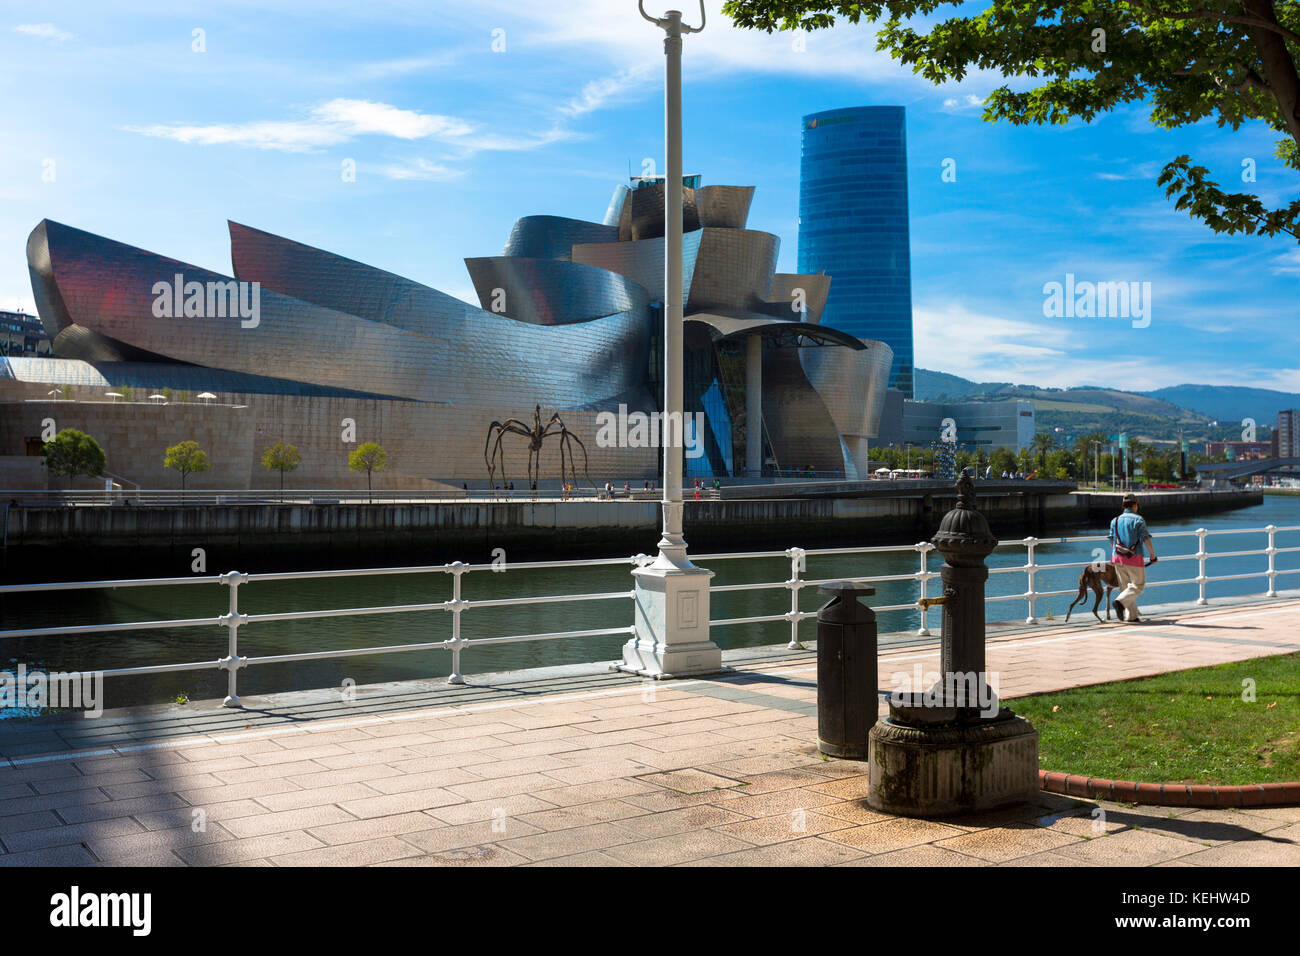 Homme marchant chien devant l'architecte Frank Gehry Musée Guggenheim de l'autre côté de la rivière Nervion à Bilbao, pays basque, Espagne Banque D'Images